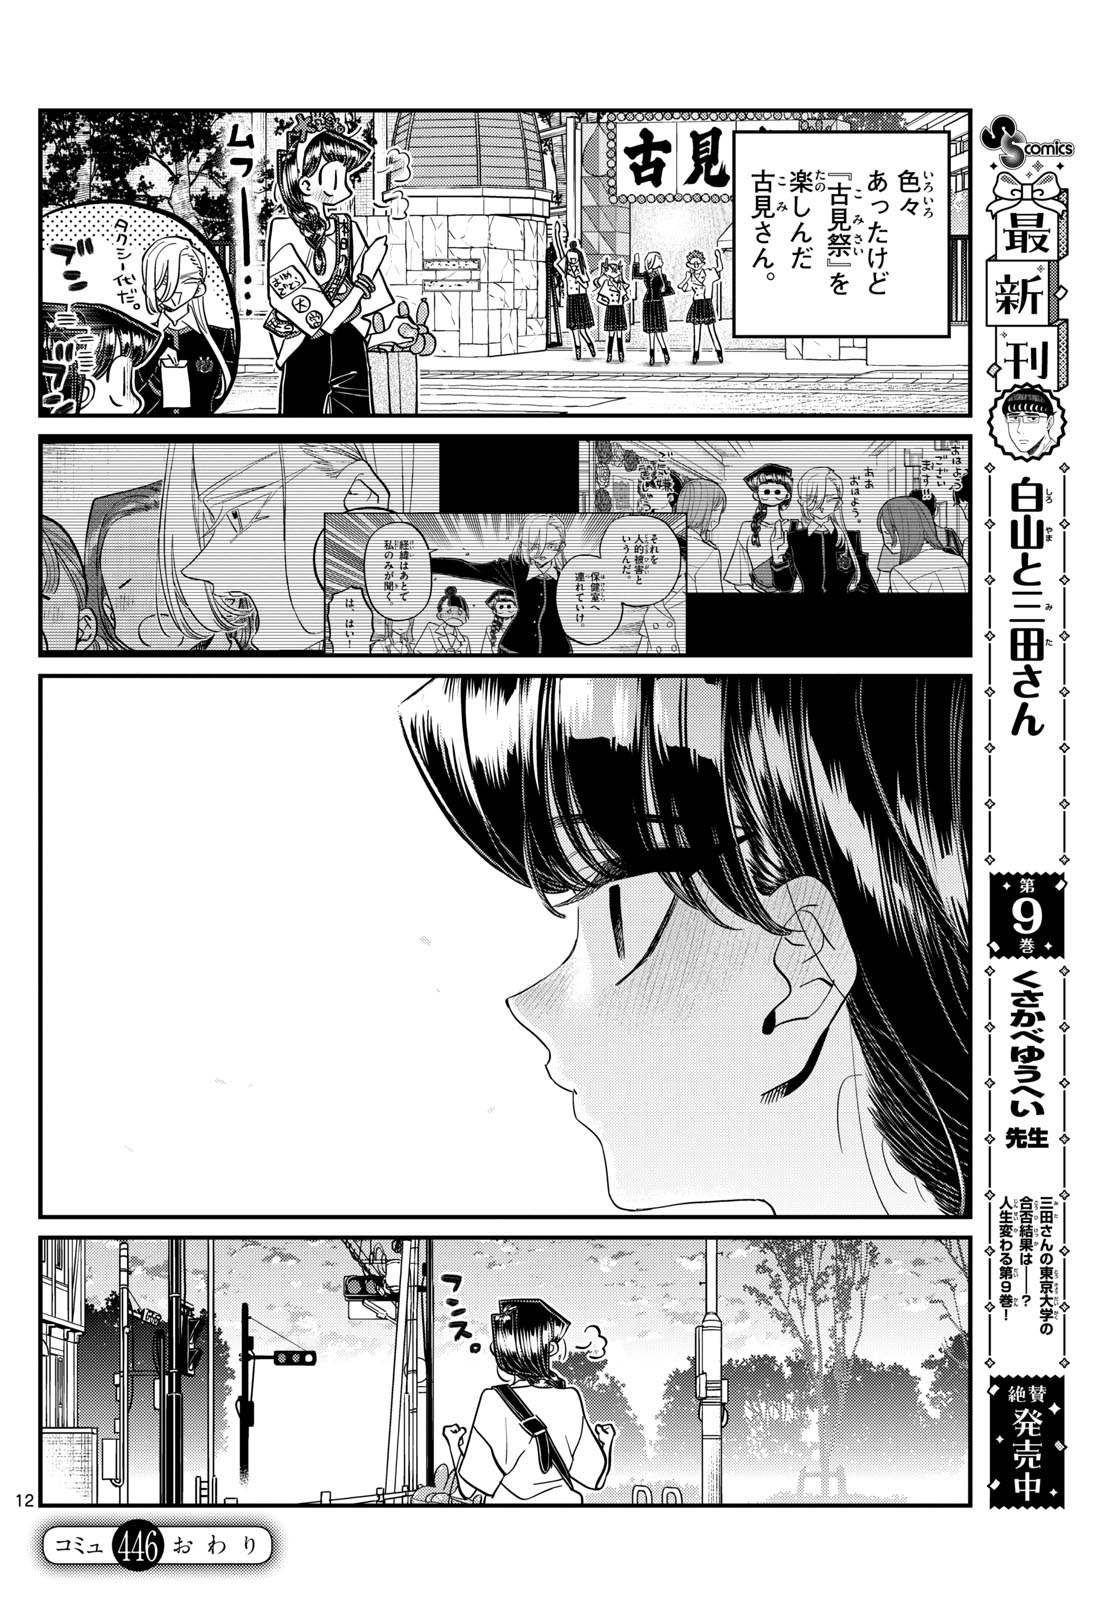 Komi-san wa Komyushou Desu - Chapter 446 - Page 12